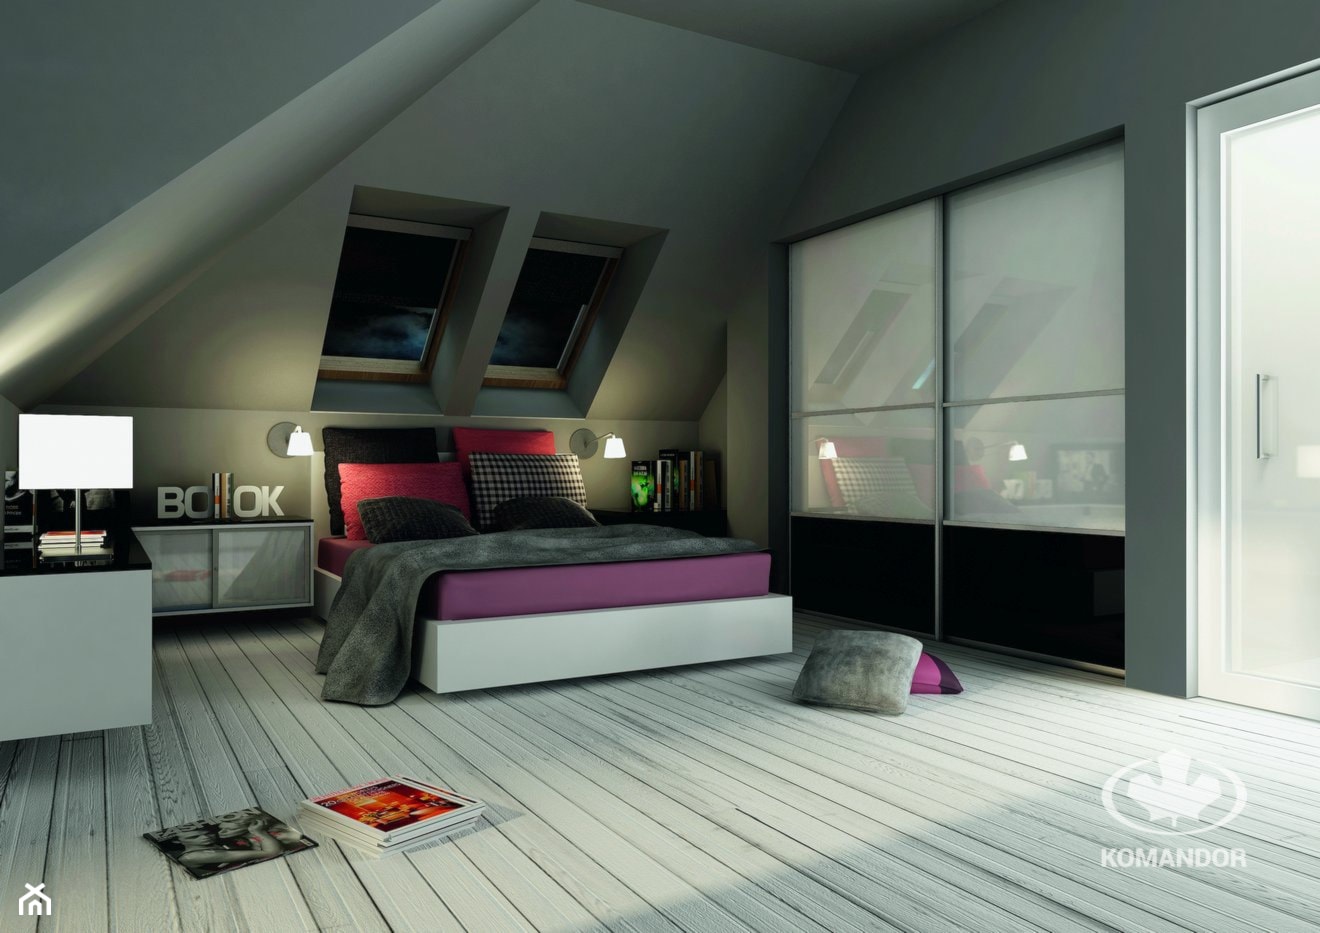 Sypialnia KOMANDOR - Średnia szara sypialnia na poddaszu, styl nowoczesny - zdjęcie od Komandor - Wnętrza z Charakterem - Homebook